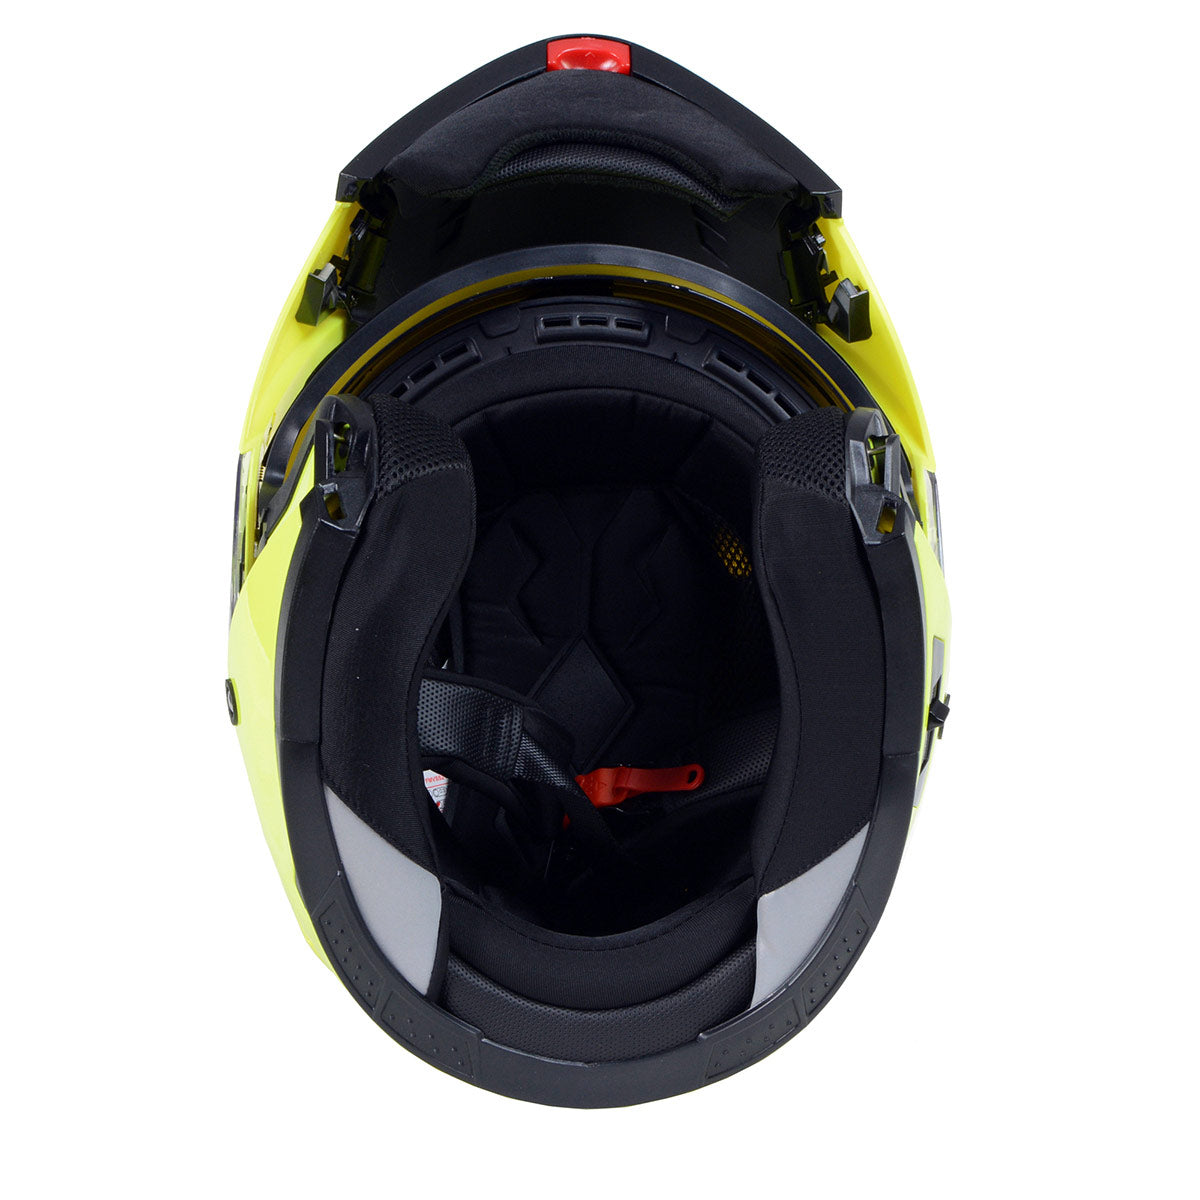 Milwaukee Helmets MPH9819DOT 'Breeze' Green Advanced Motorcycle Modular Helmet for Men and Women Biker w/ Drop Down Visor